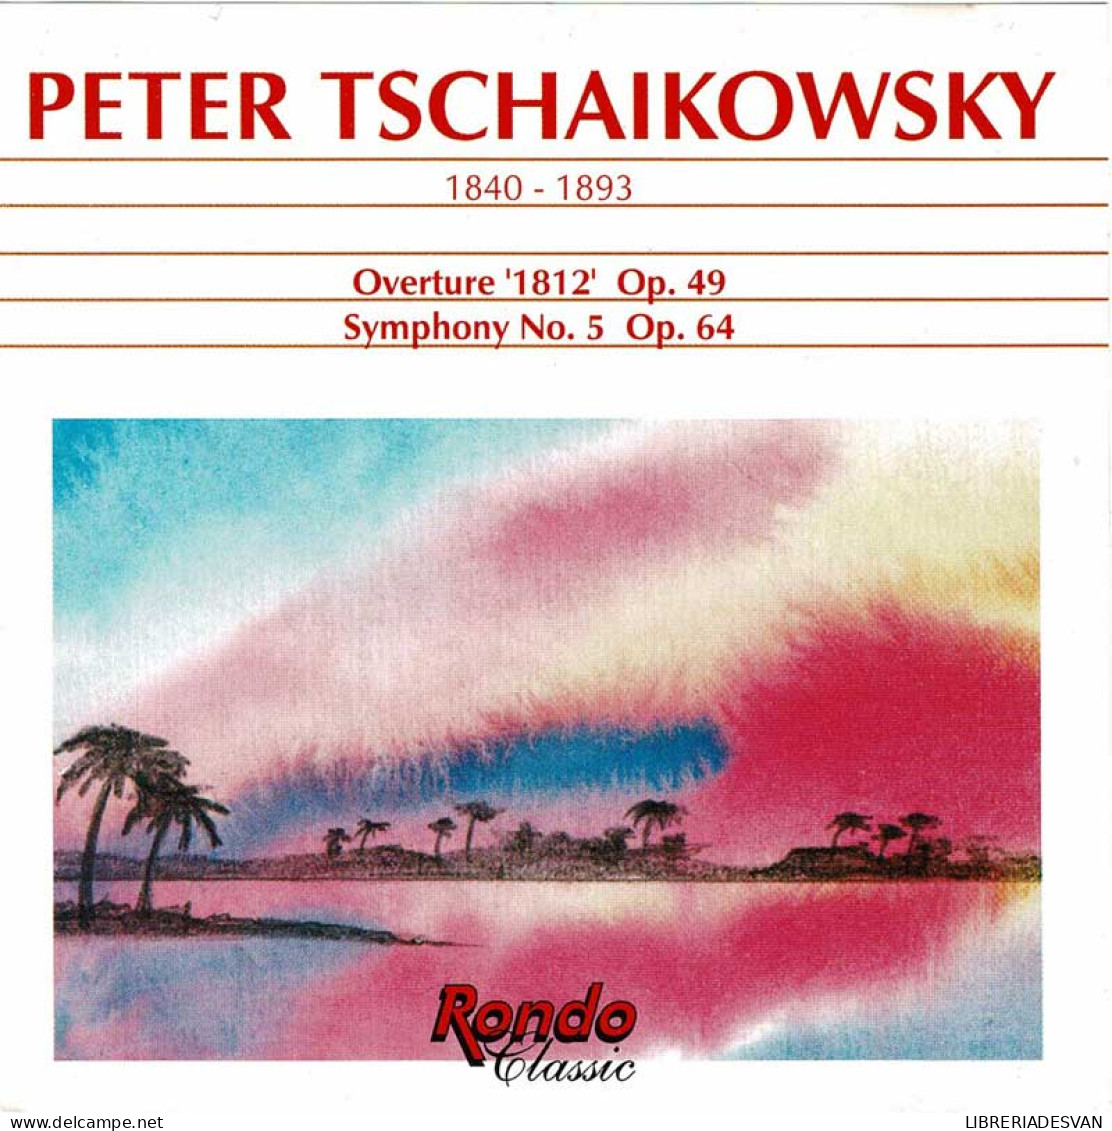 Peter Tschaikowsky - Overture 1812 Op. 49. Symphony No. 5 Op. 64. CD - Classica